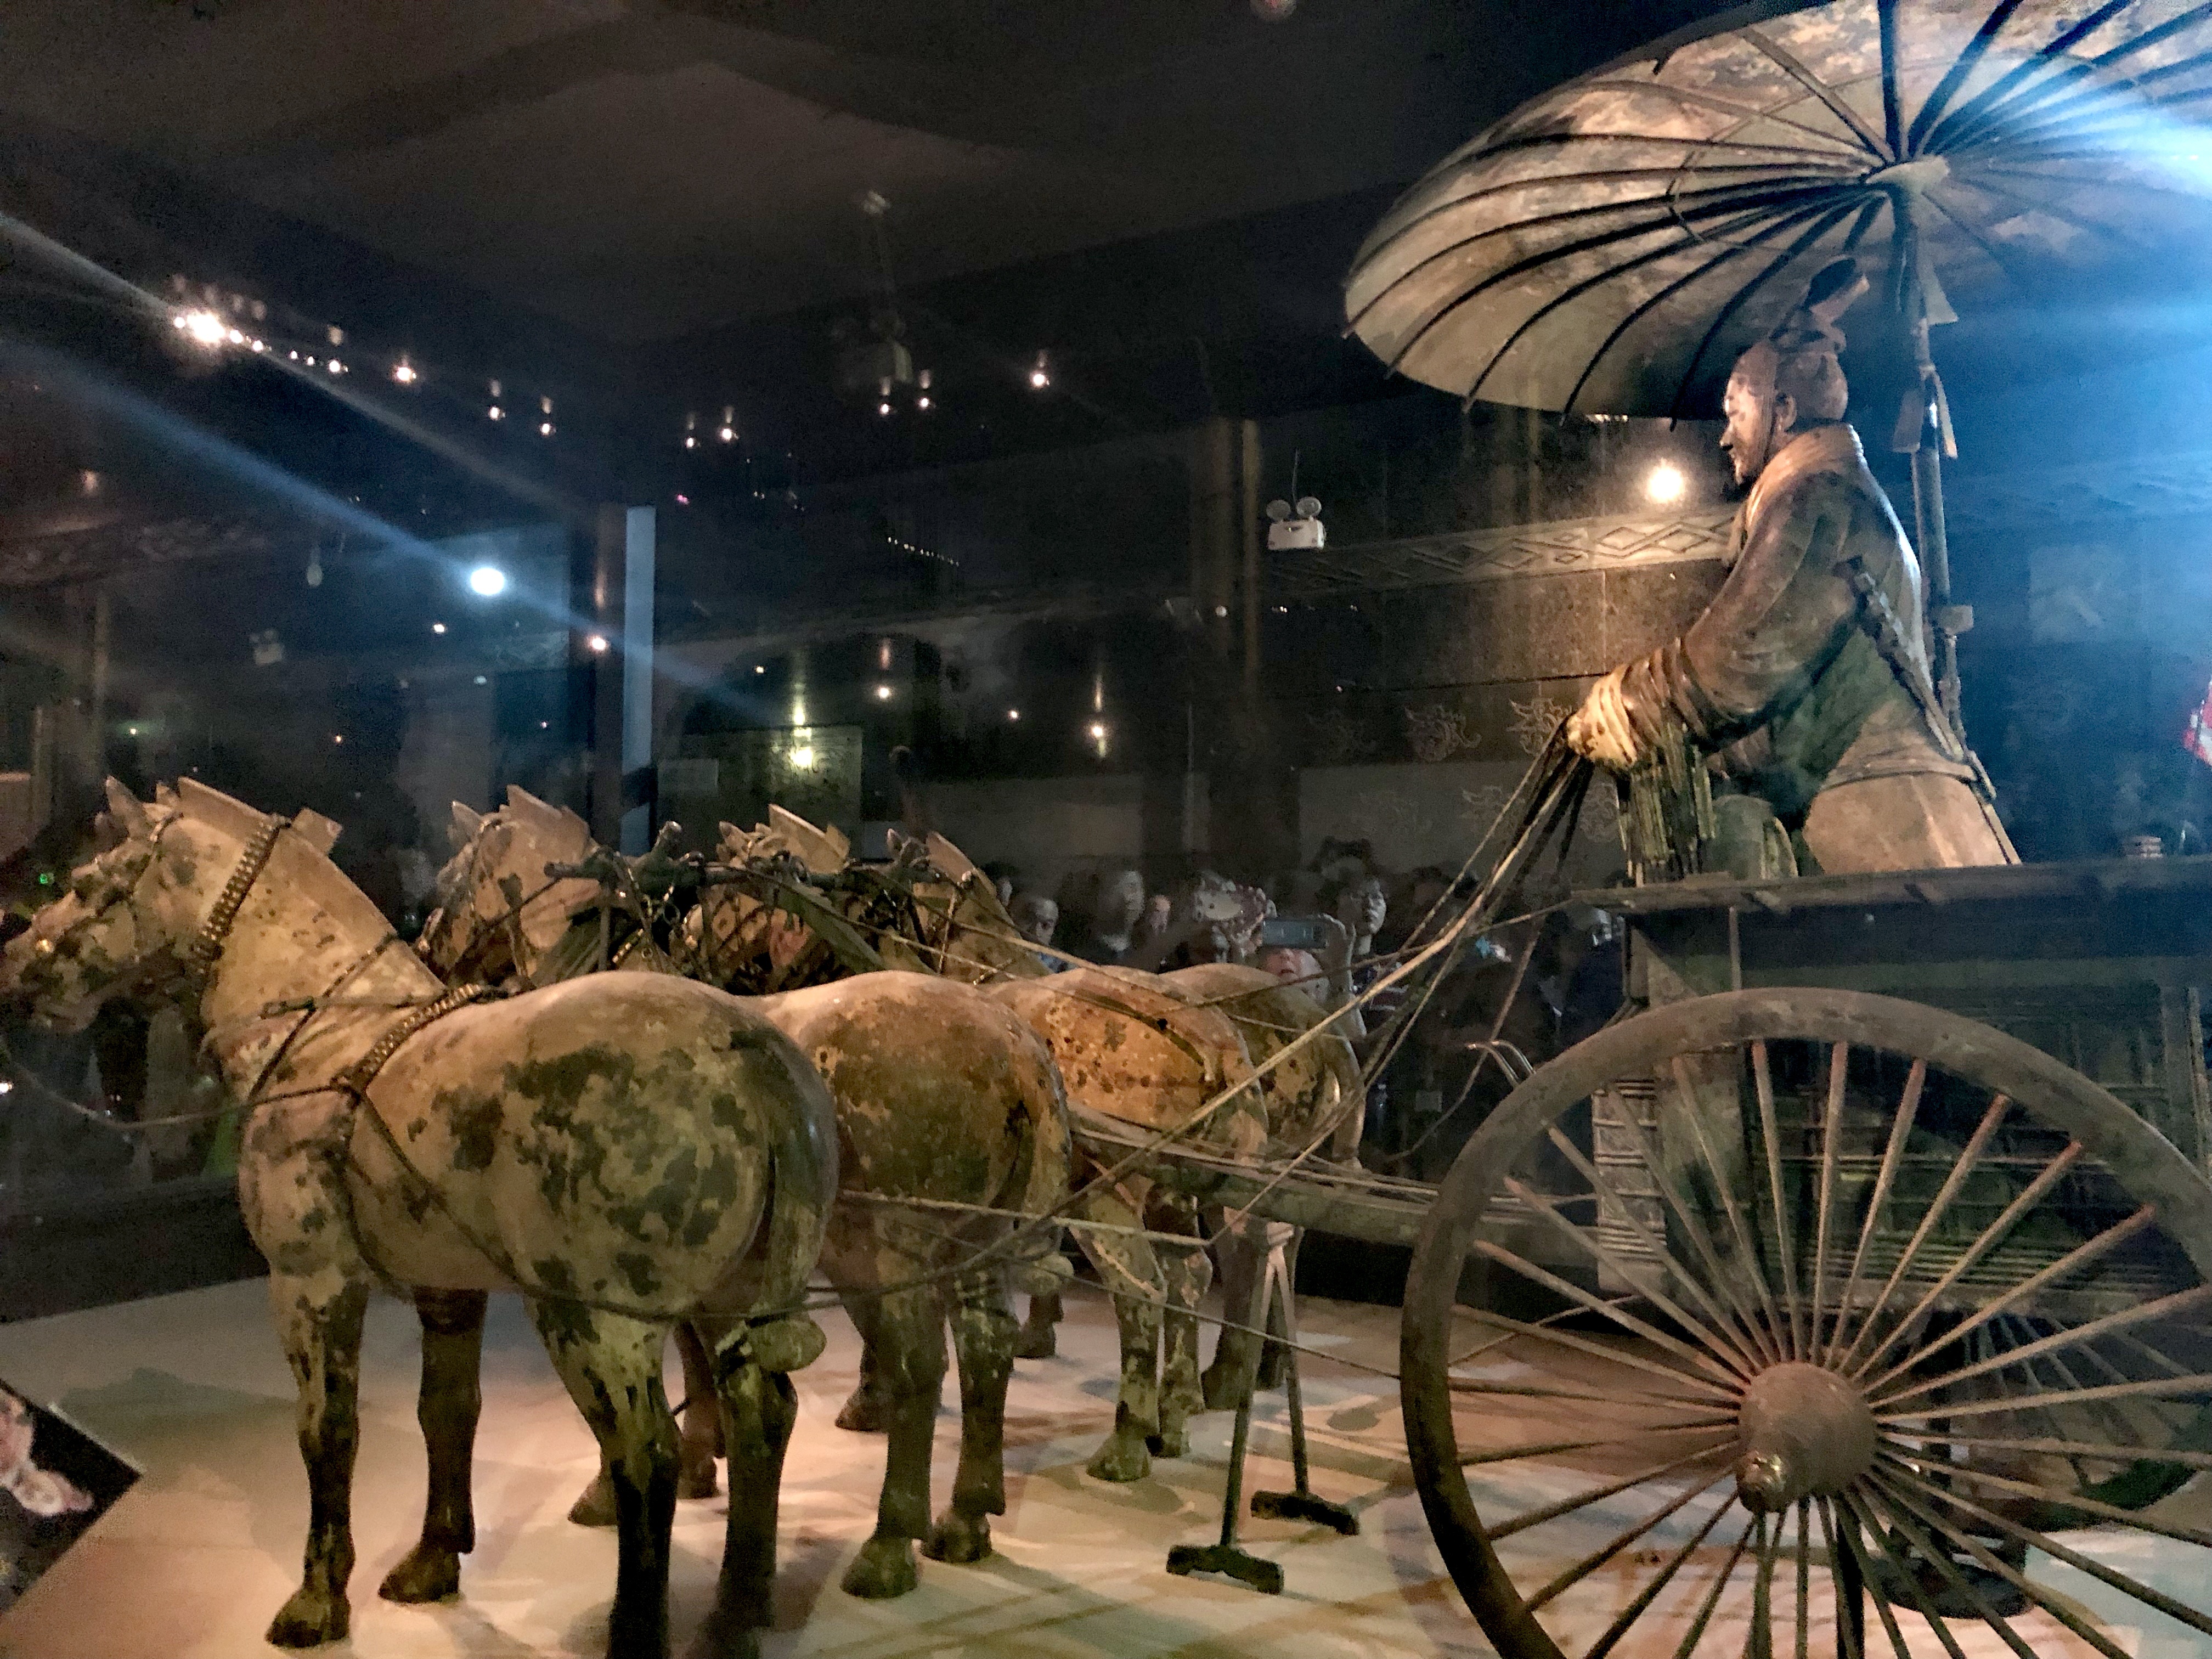 秦始皇陵青铜车马展示图片